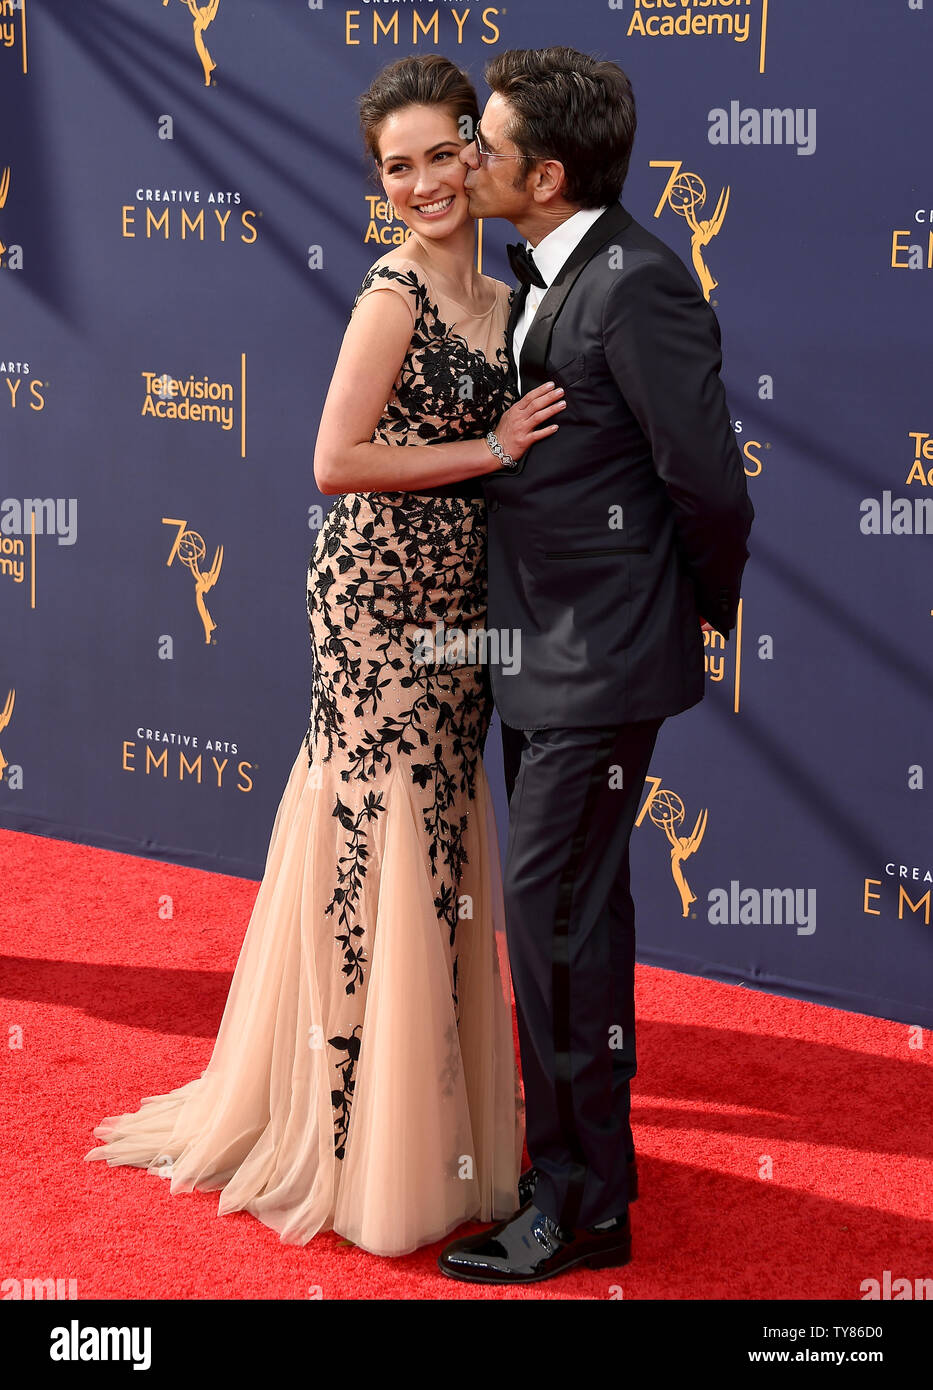 (L-R) attore John Stamos e moglie Caitlin McHugh frequentare il Creative Arts Emmy Awards presso il Microsoft Theatre di Los Angeles il 8 settembre 2018. Foto da Gregg DeGuire/UPI Foto Stock